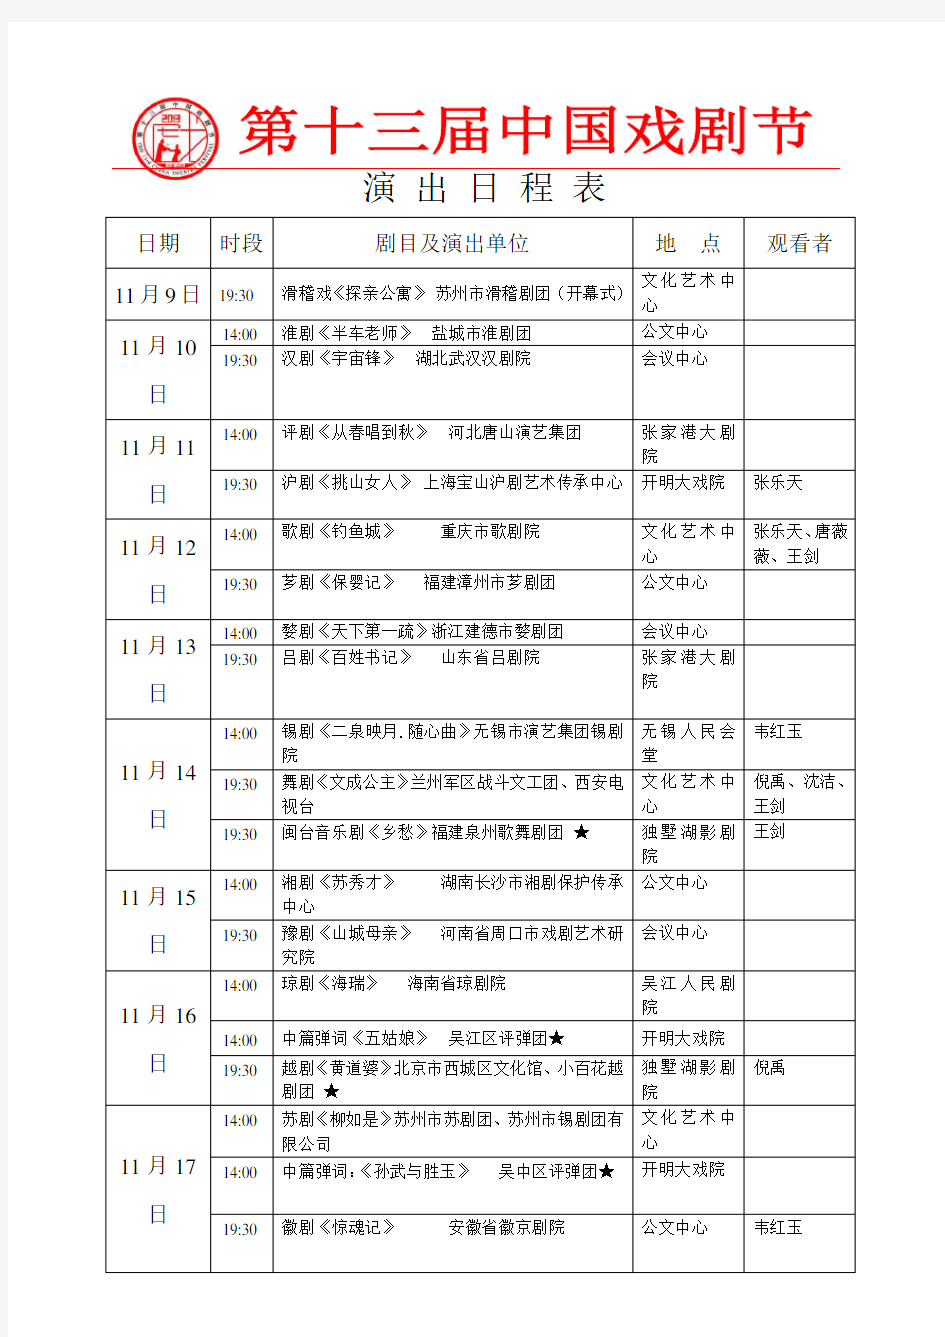 中国戏剧节演出日程表